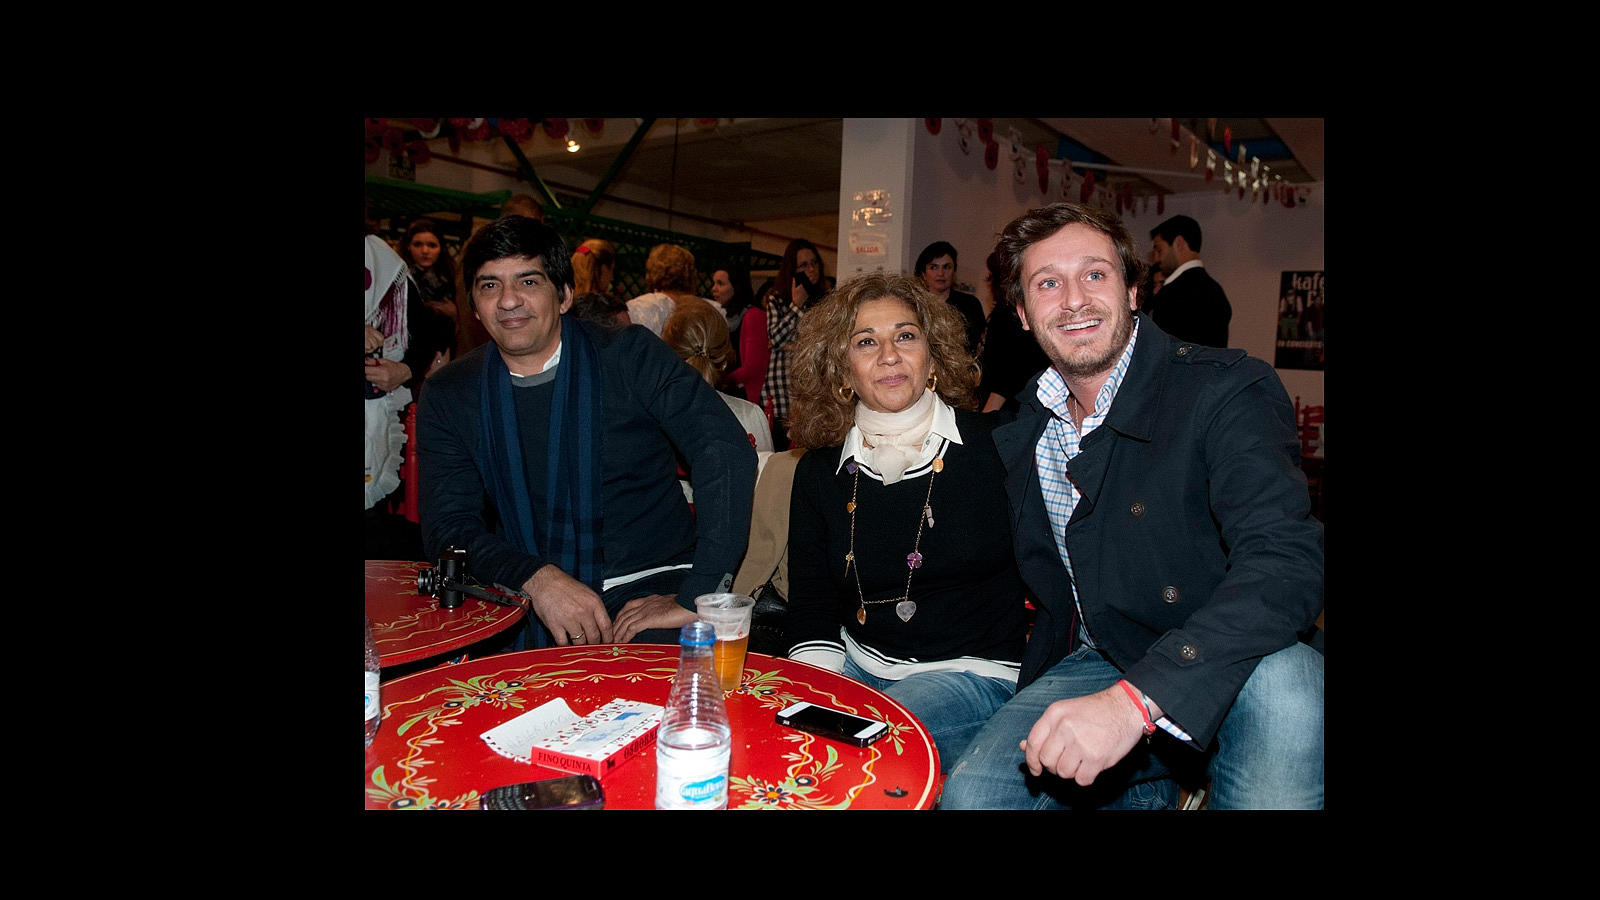 En noviembre de 2012 la pareja disfrutaba de una noche de flamenco con muchos conocidos en el Rastrillo de Nuevo Futuro